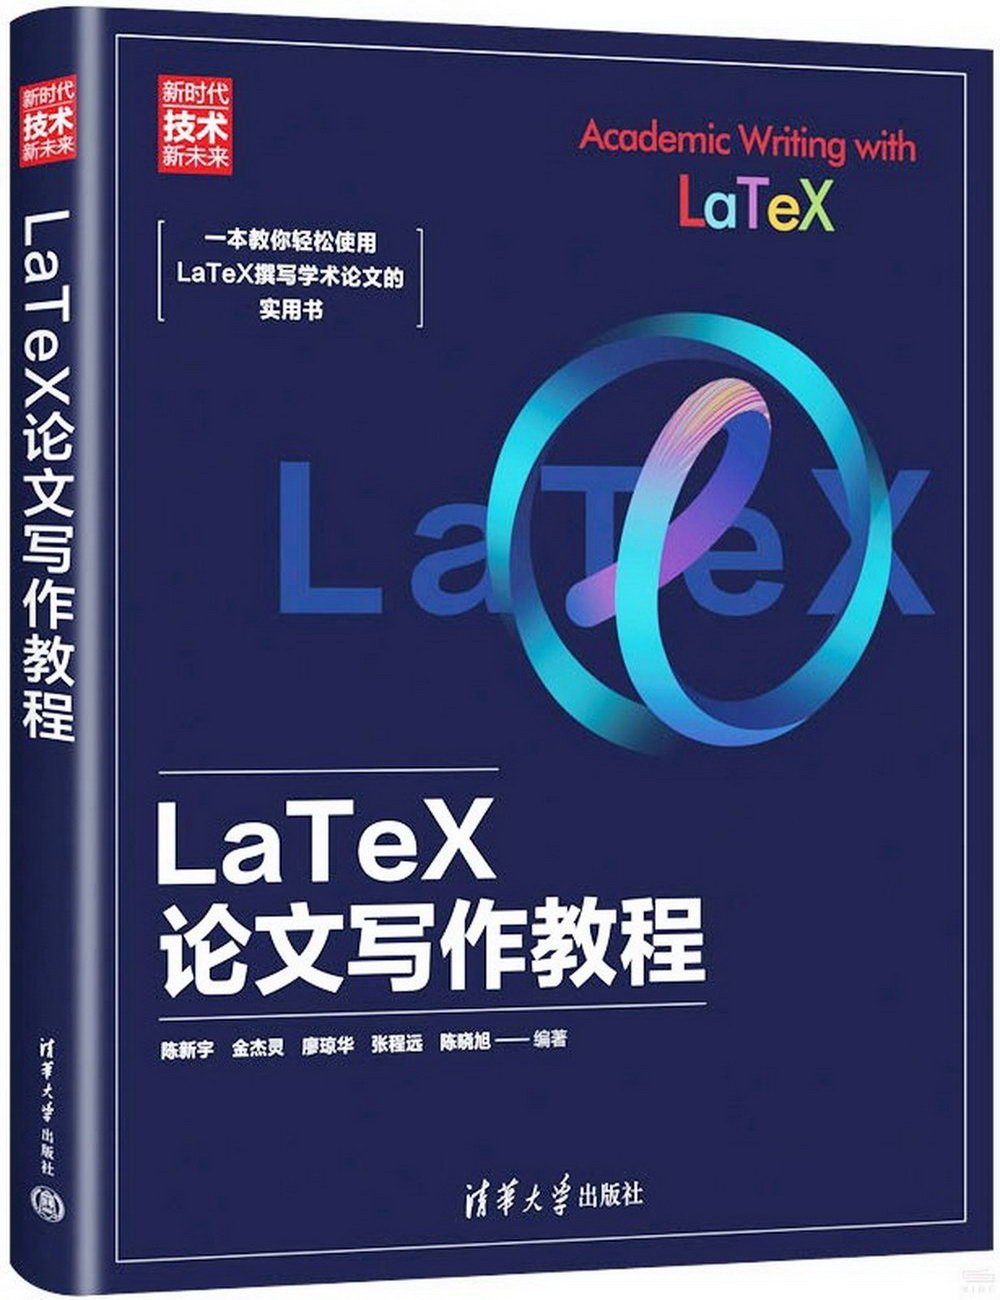 LaTeX論文寫作教程